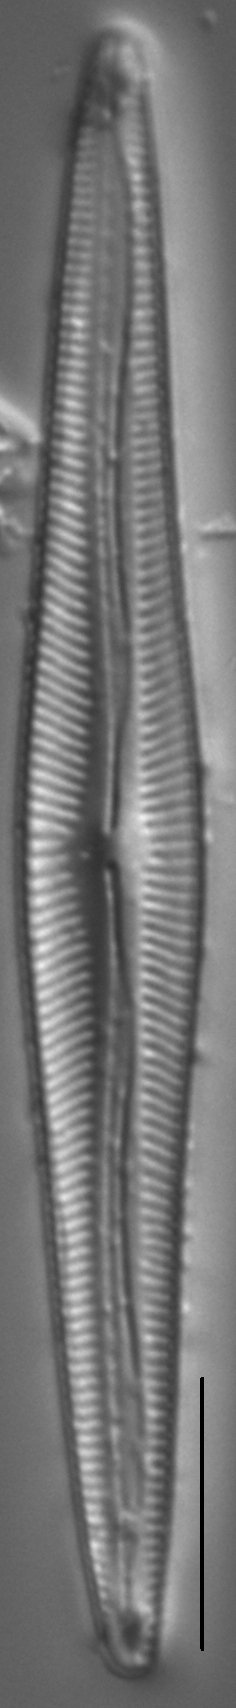 Encyonopsis Subspicula2